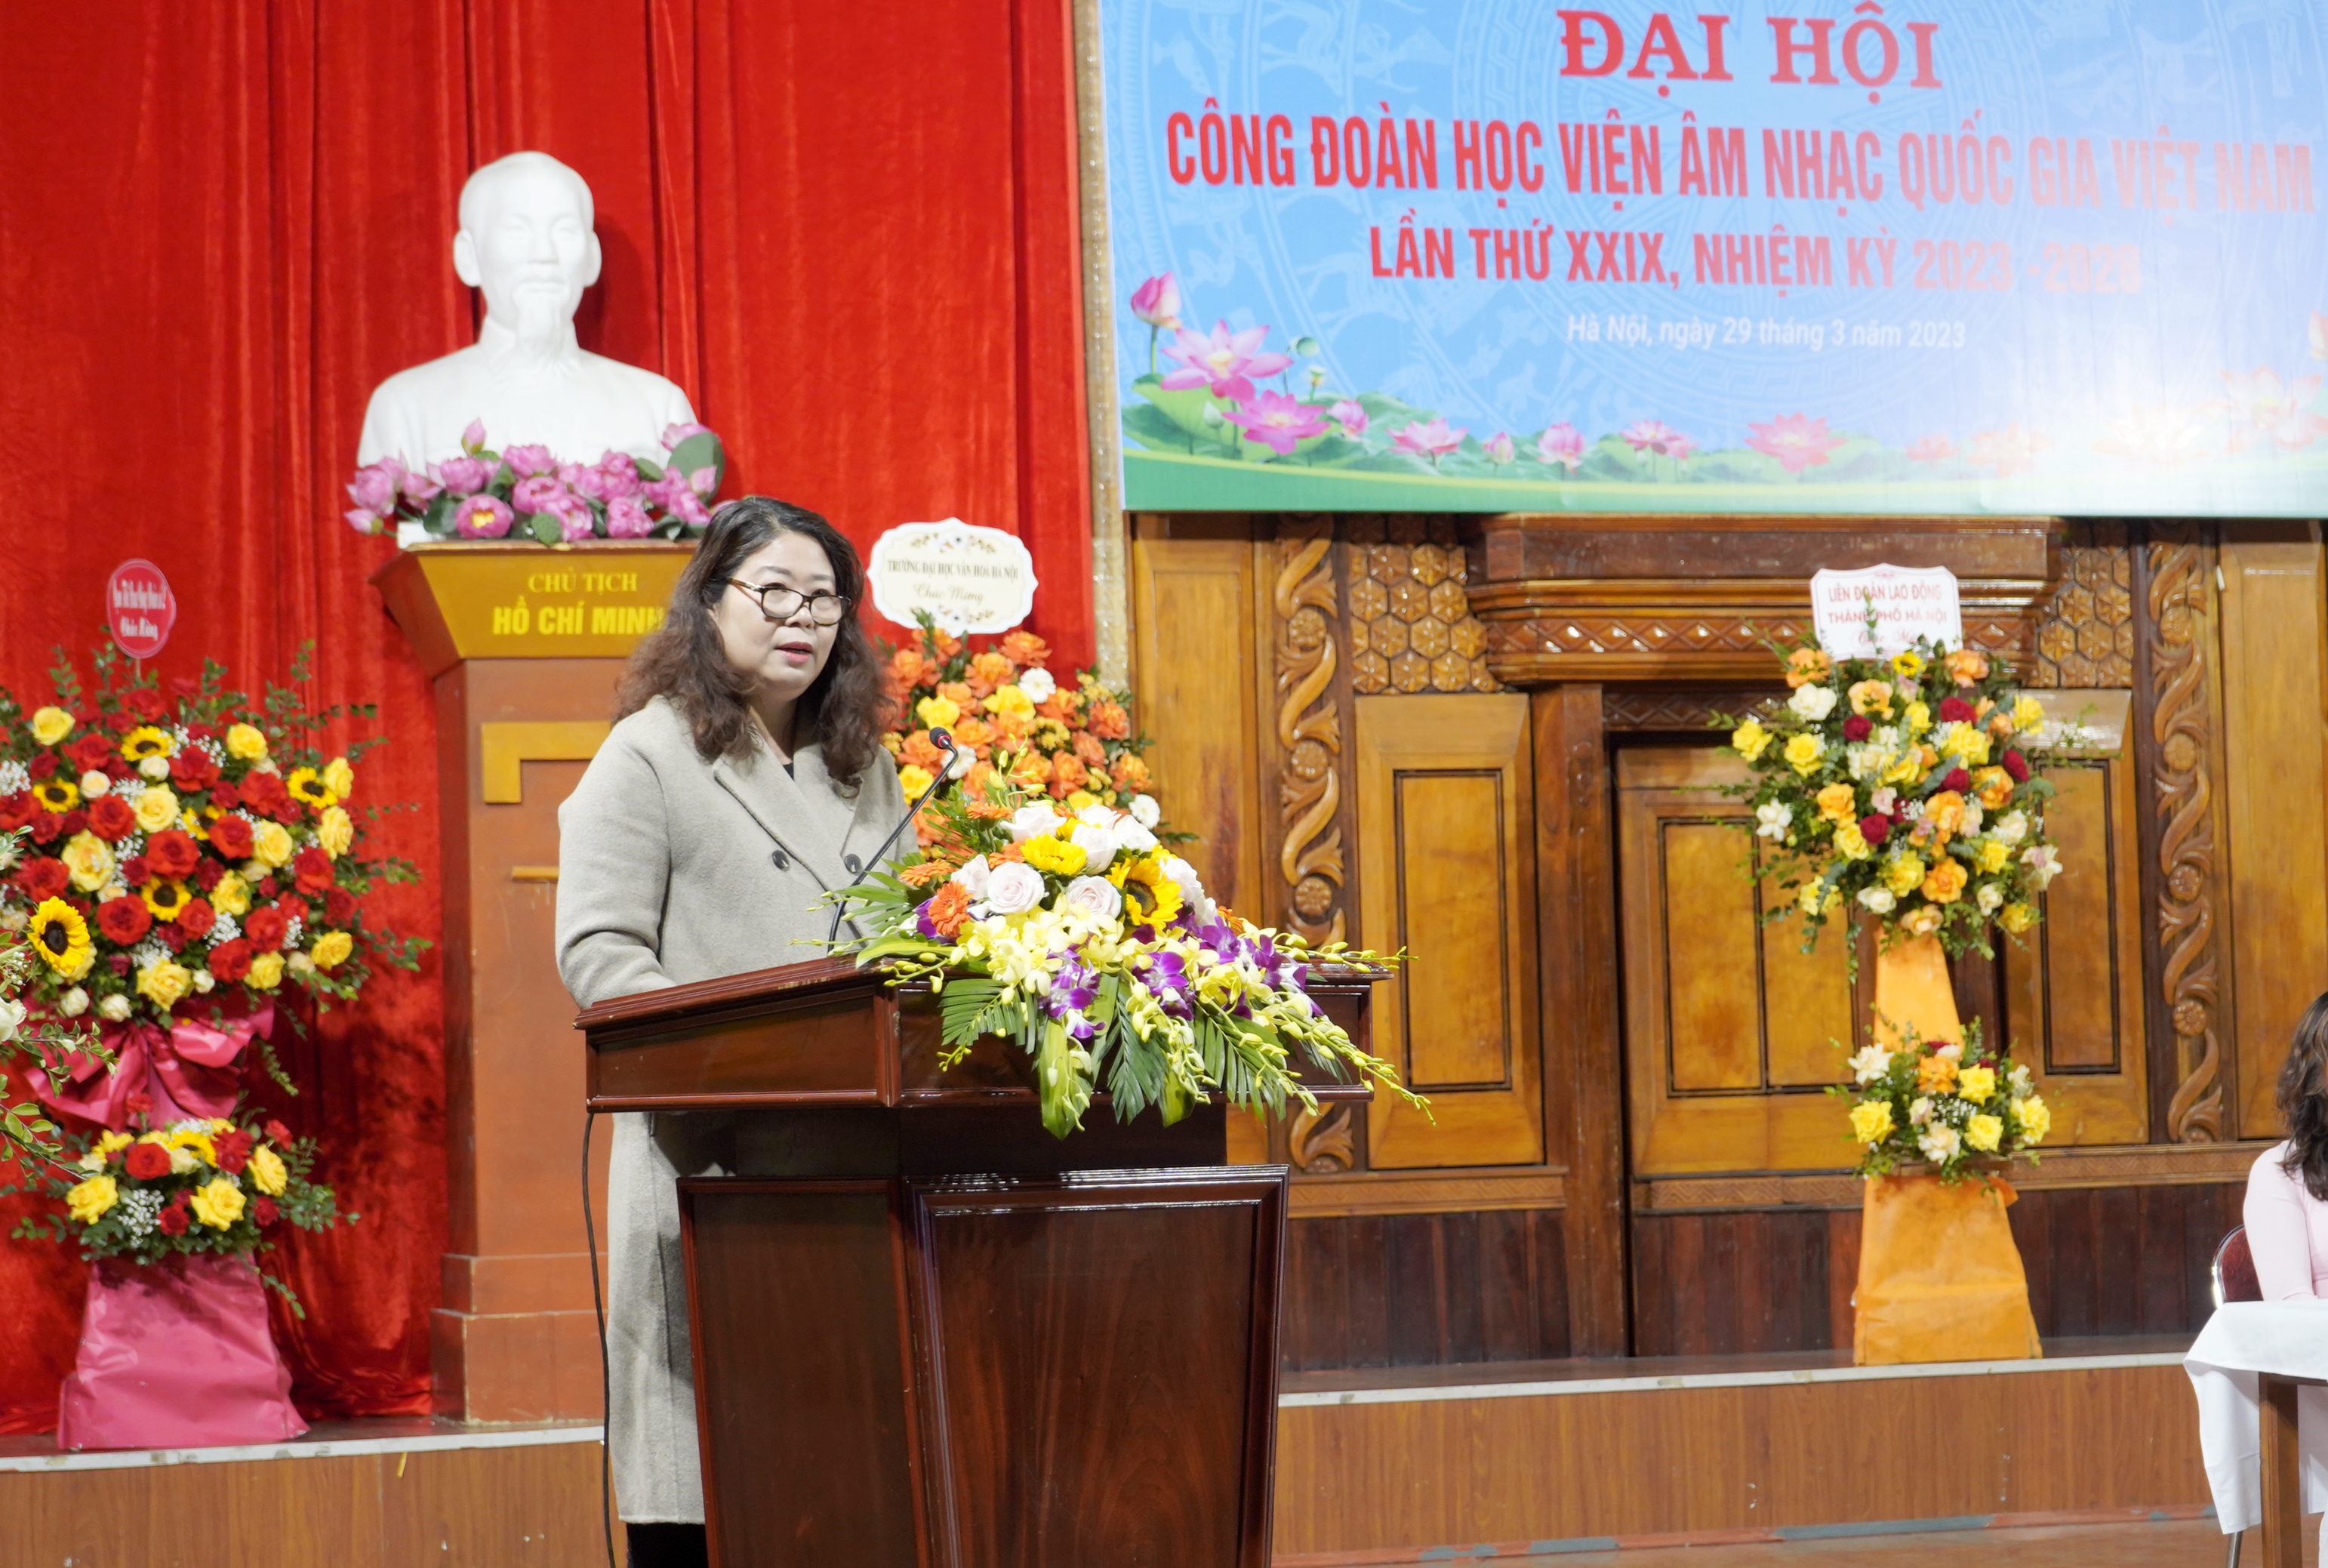 Công đoàn Học viện Âm nhạc quốc gia Việt Nam tổ chức thành công Đại hội lần thứ XXIX